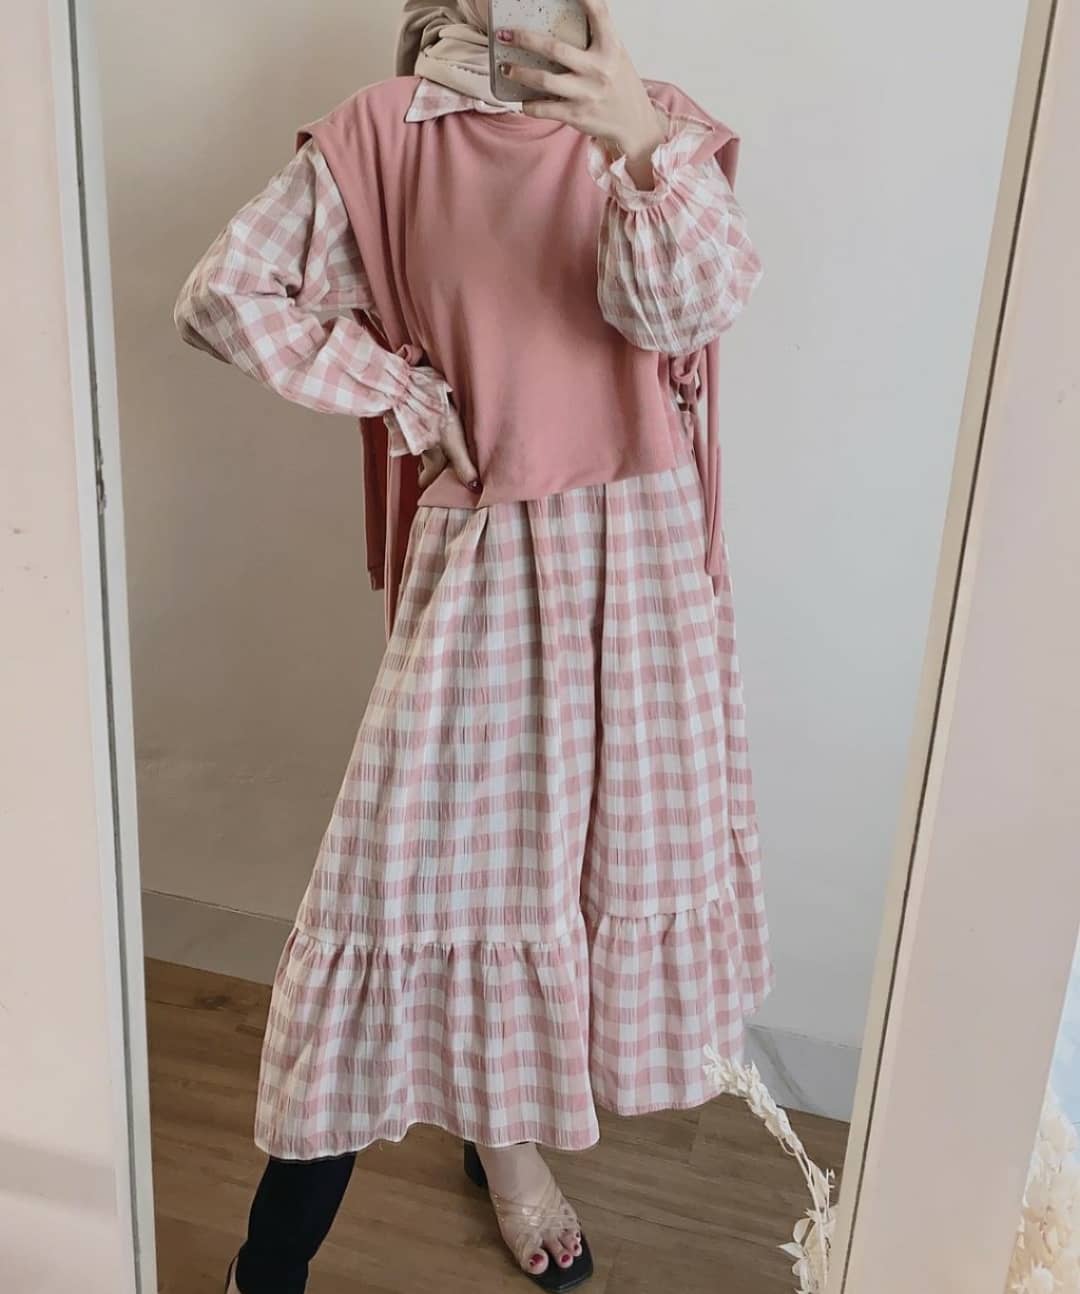 Baju Muslim Modern JOVANA TUNIK MC KATUN PREMIUM MIX WOLYCRAPE Tunik Wanita Terbaru 2021 Tunik Wanita Jumbo Tunic Tunik Kekinian Viral BEST SELLER